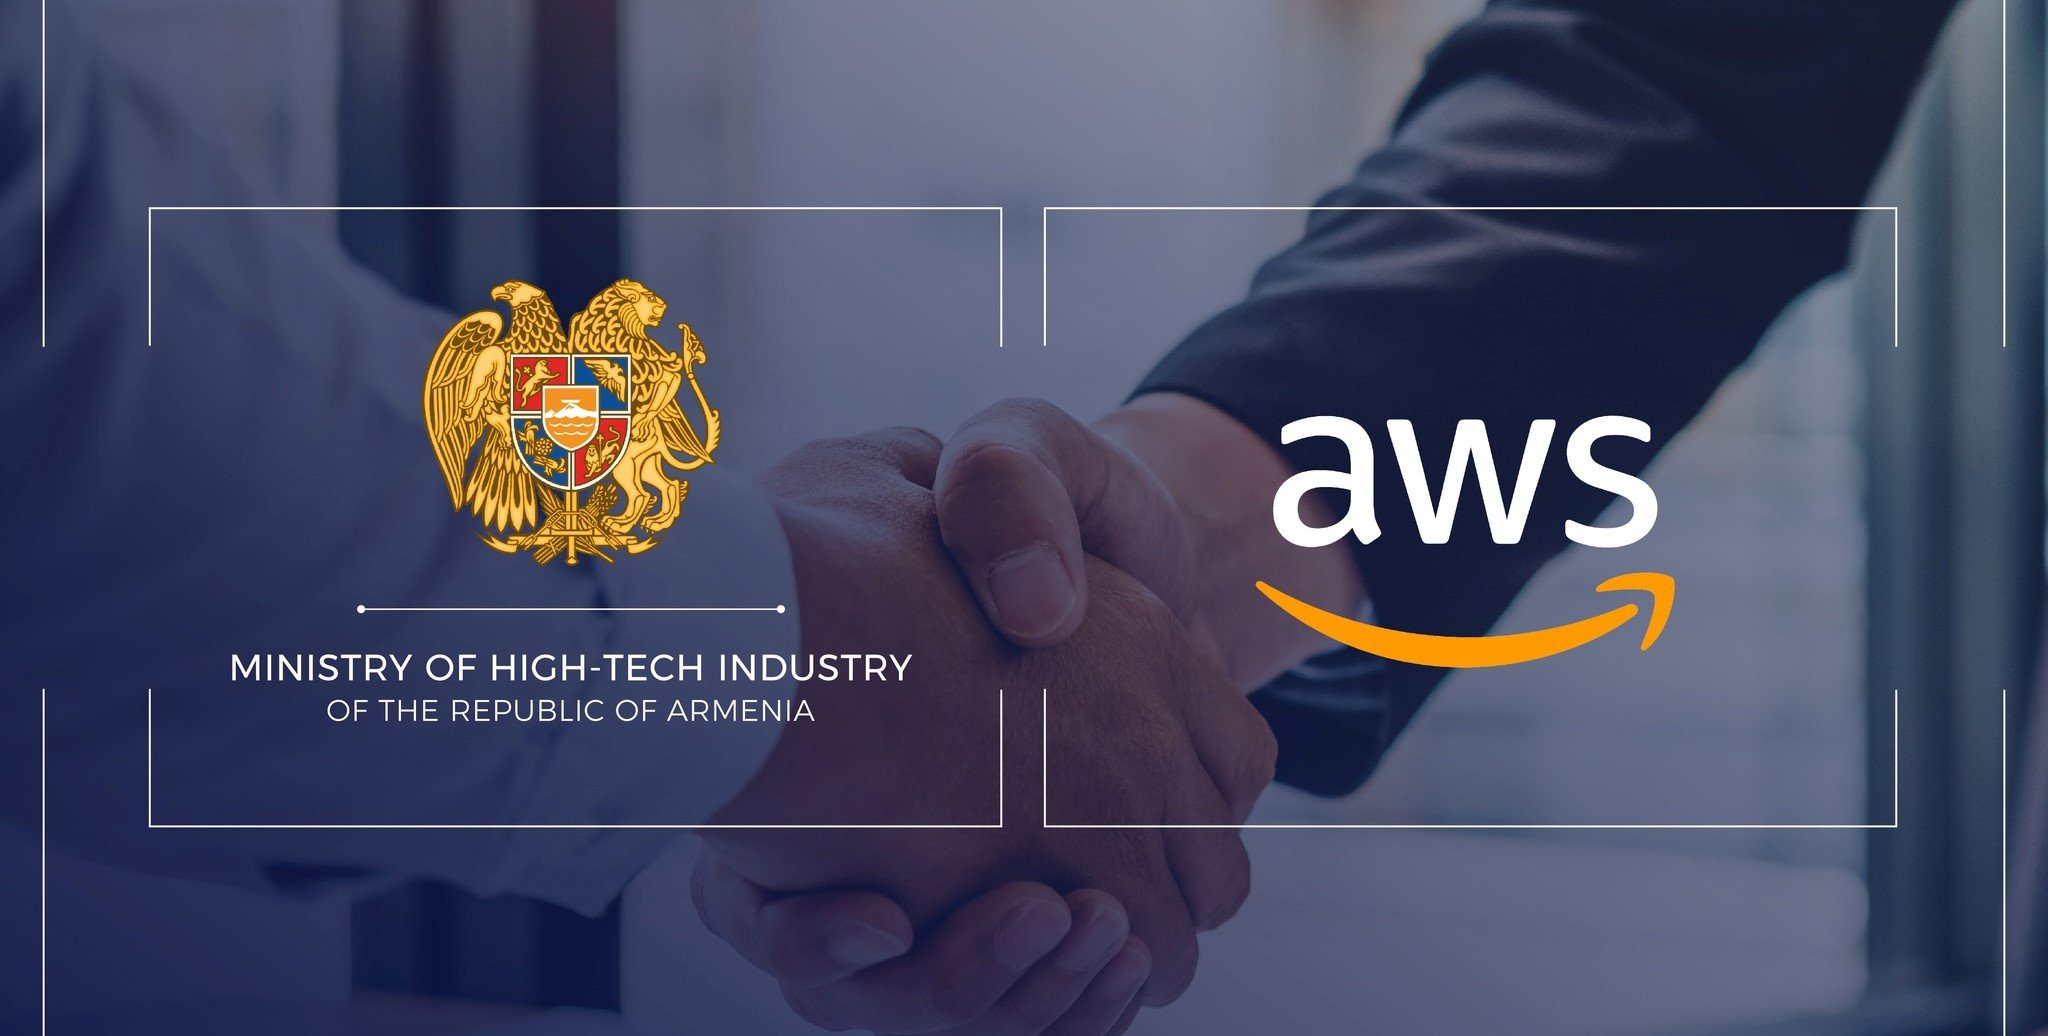 ՀՀ բարձր տեխնոլոգիական արդյունաբերության նախարարությունը և Ամազոն Վեբ Սերվիսը (Amazon Web Services (AWS)) փոխըմբռնման հուշագիր են ստորագրել